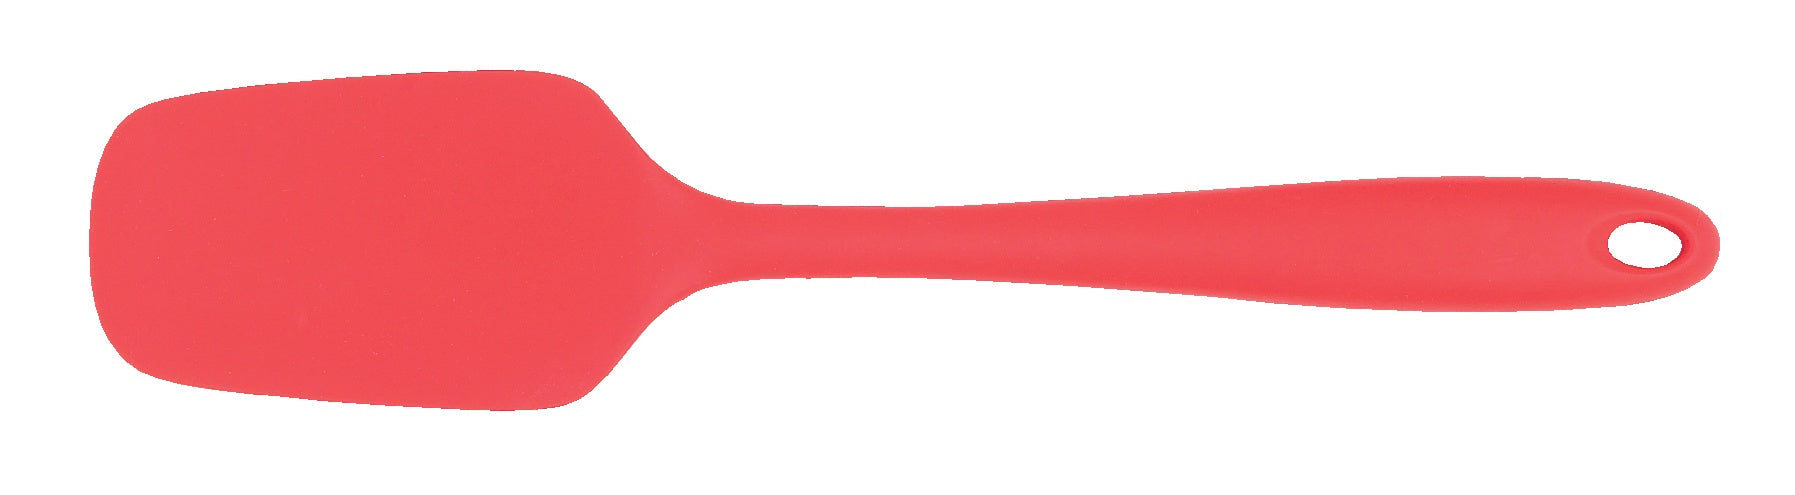 Red Silicone Spoon Spatula